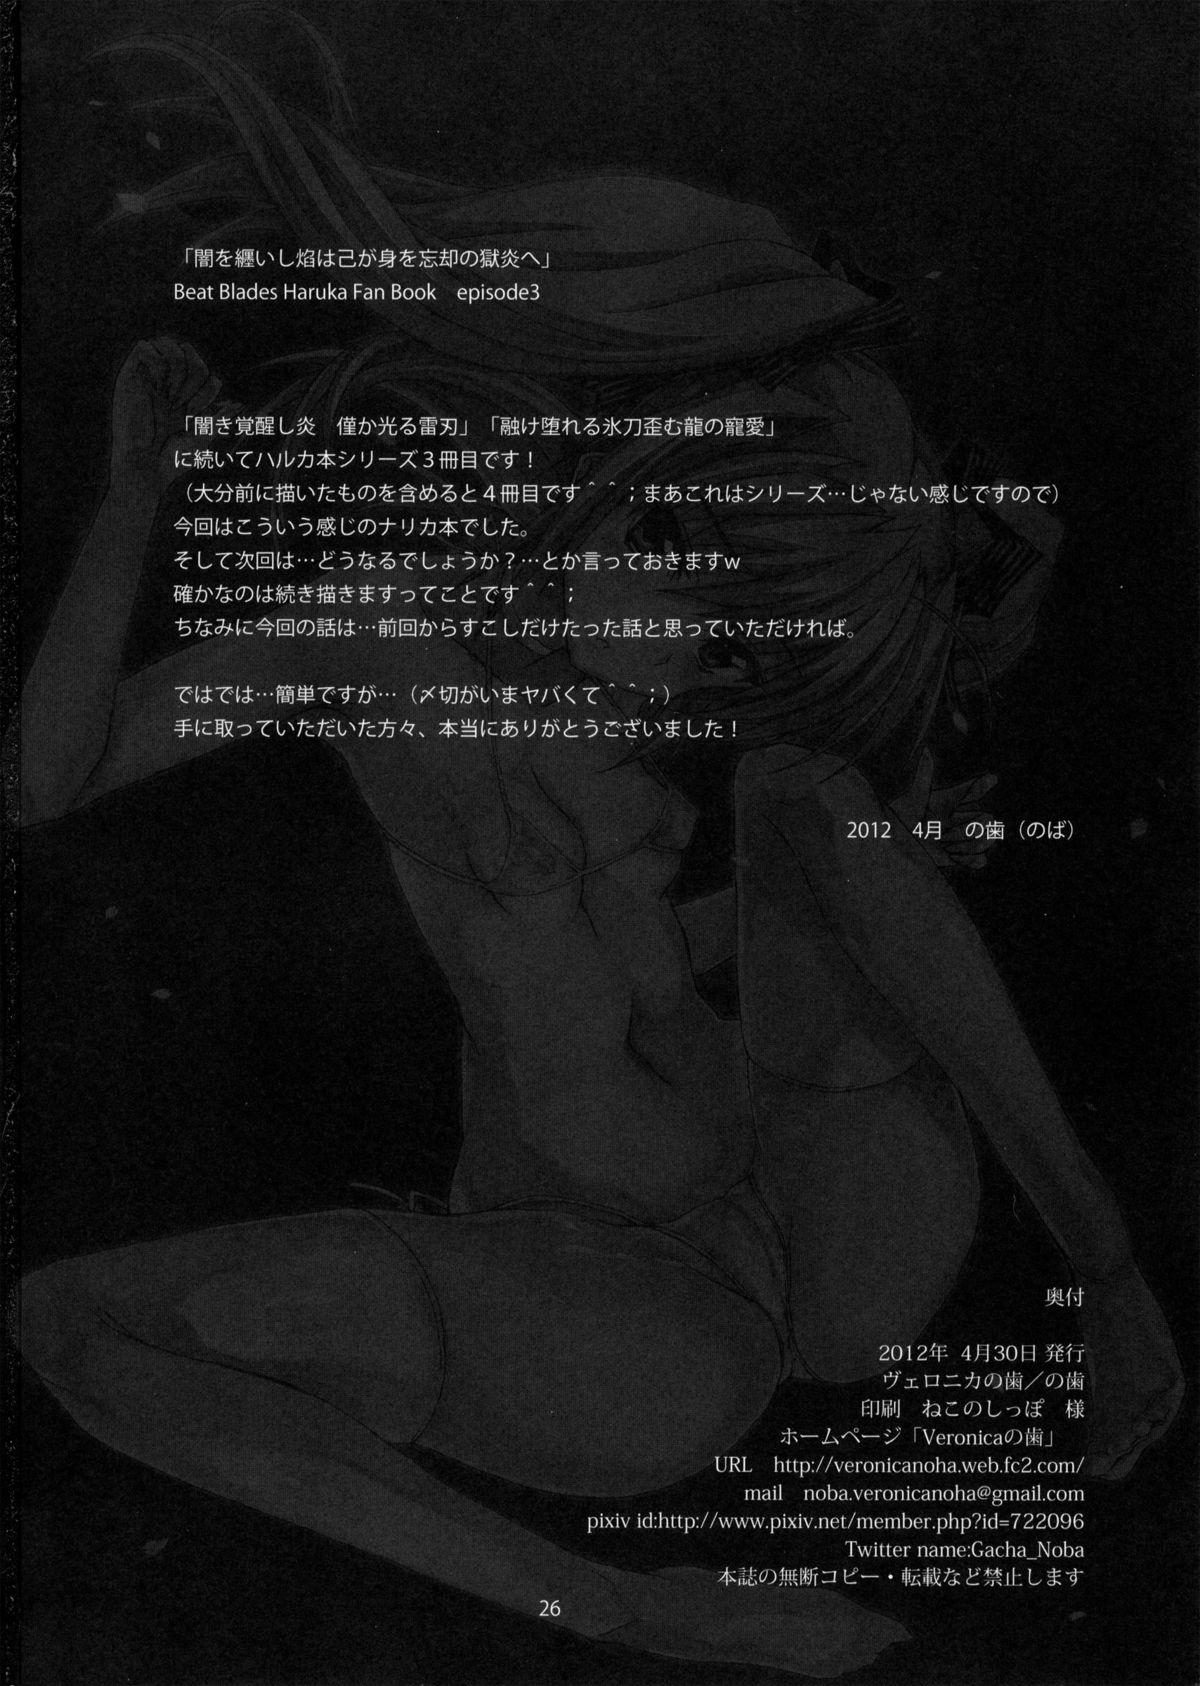 Master Yami wo Matoishi Homura wa Ono ga Mi wo Boukyaku no Gokuen e - Beat blades haruka Juicy - Page 25